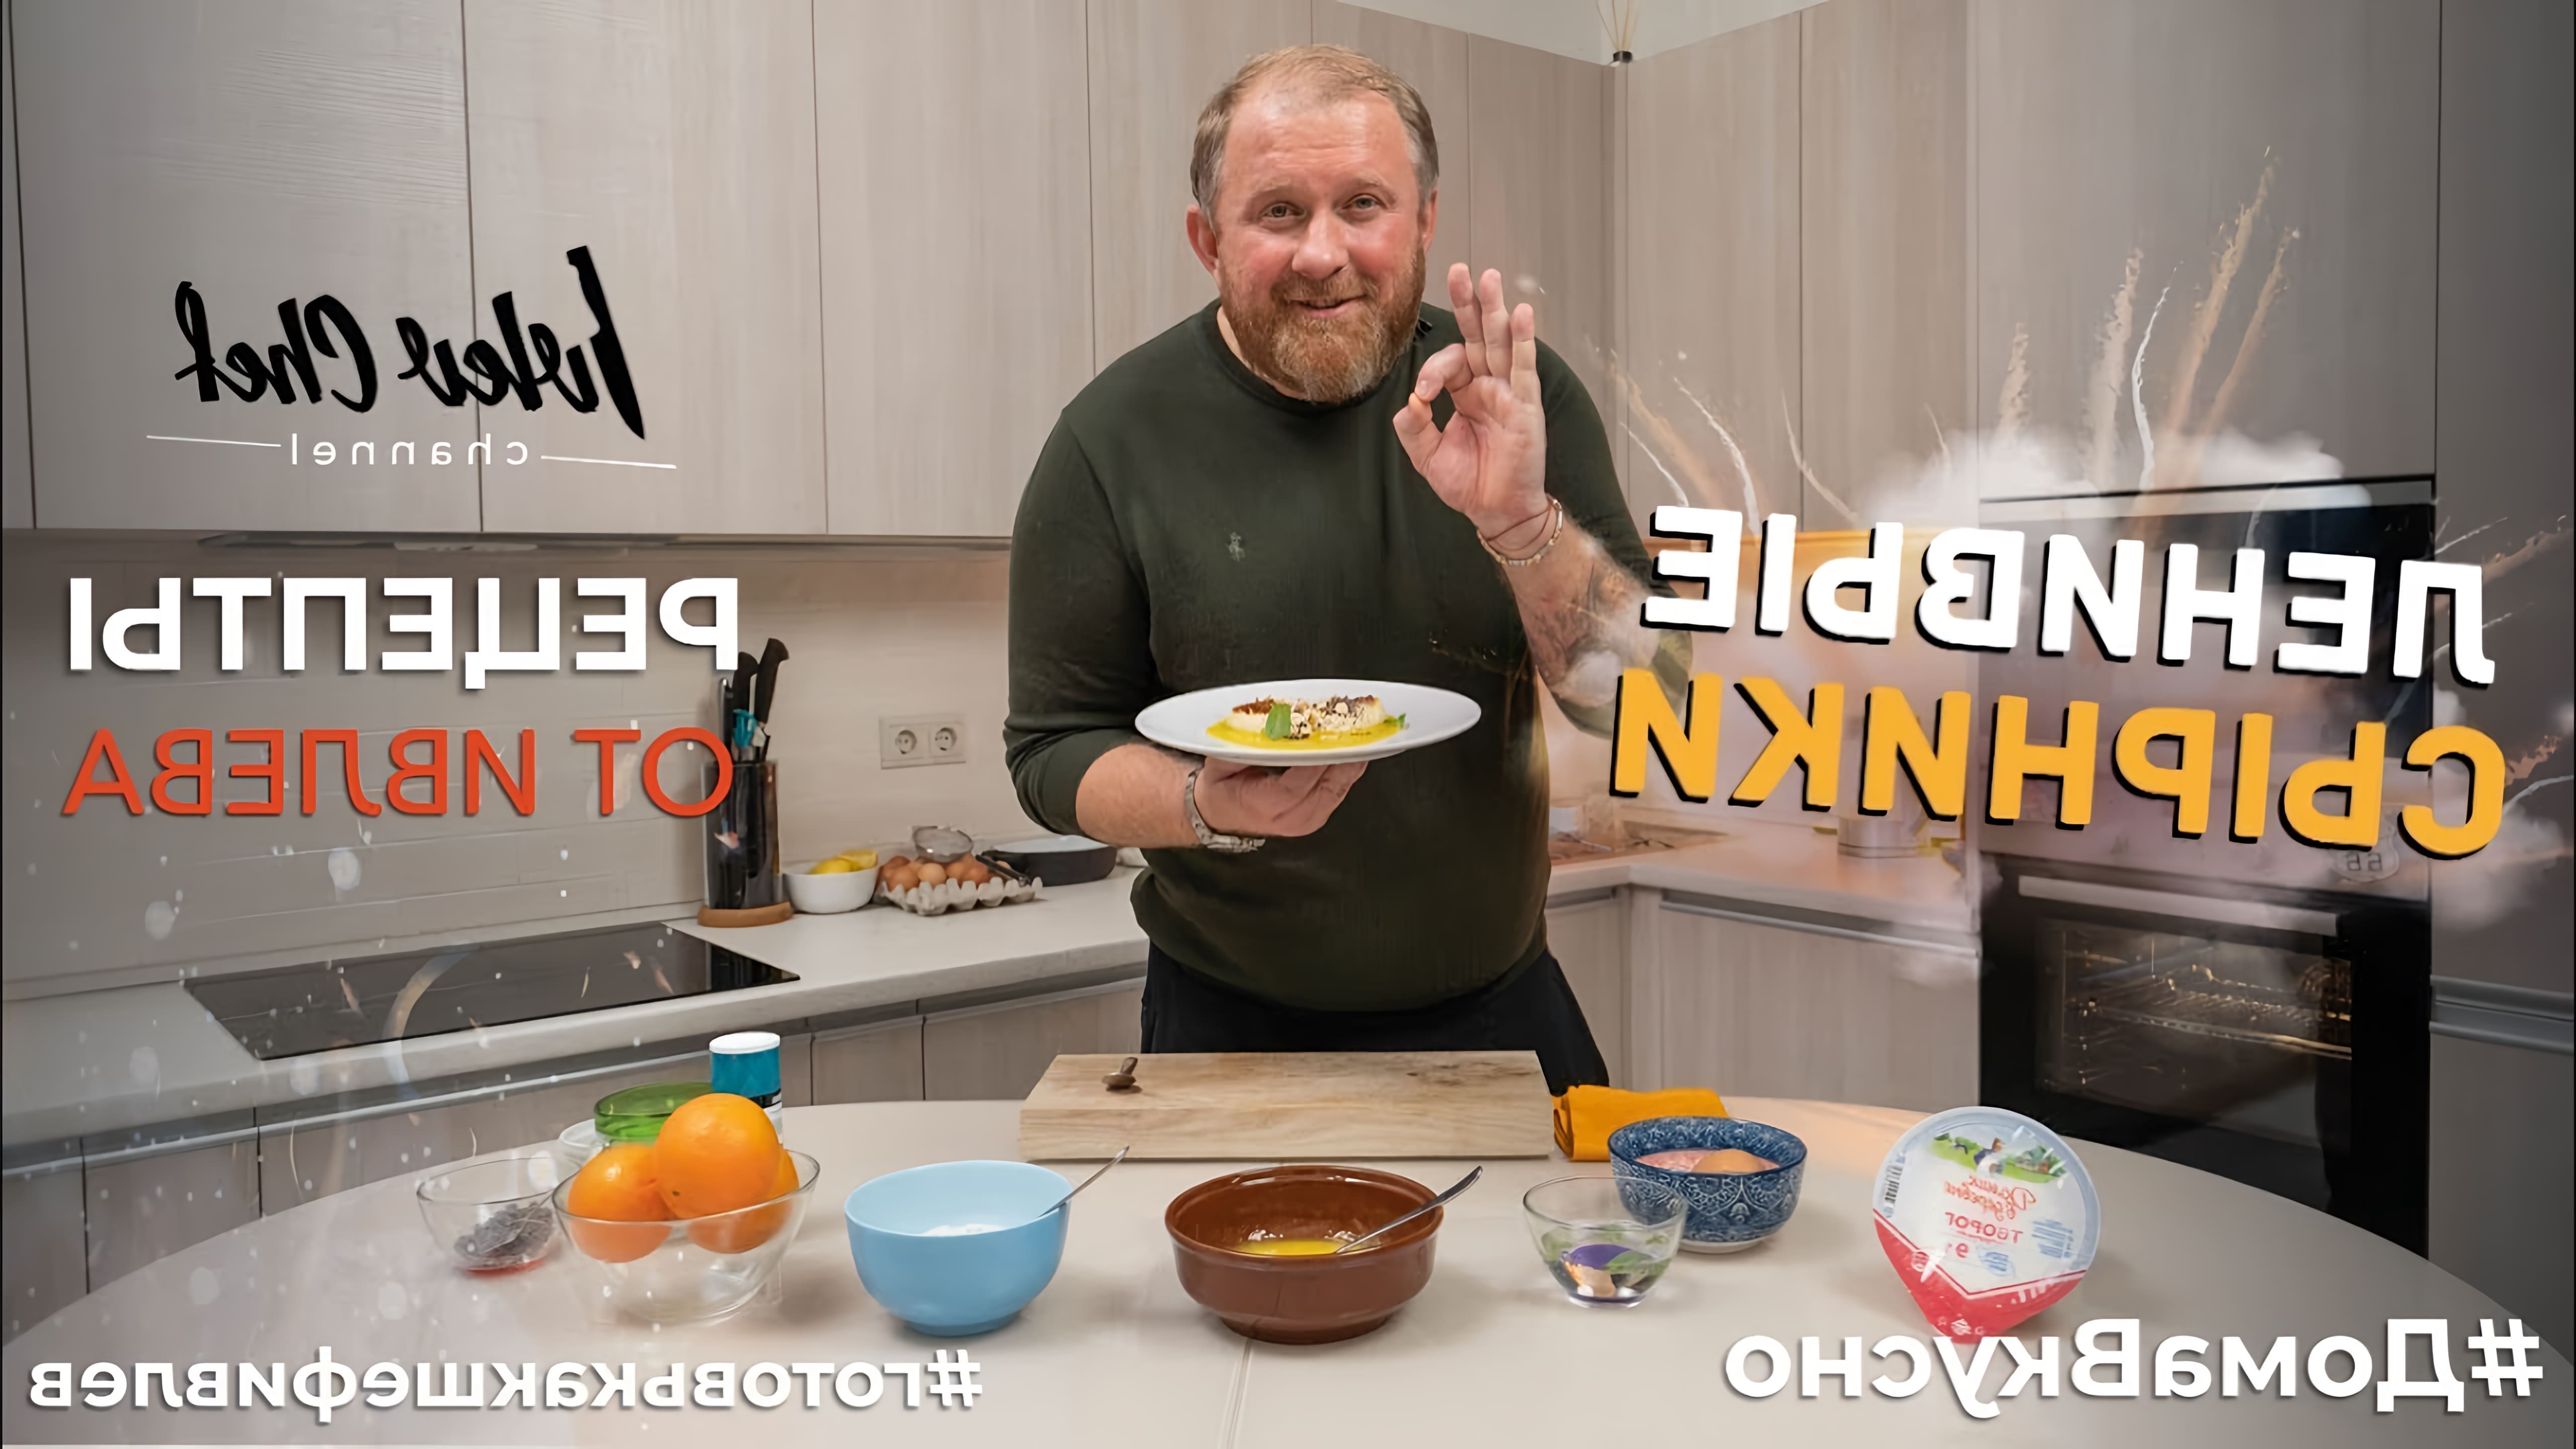 В этом видео Константин Ивлев показывает, как приготовить ленивые сырники с маком и фундуком на апельсиновом соусе